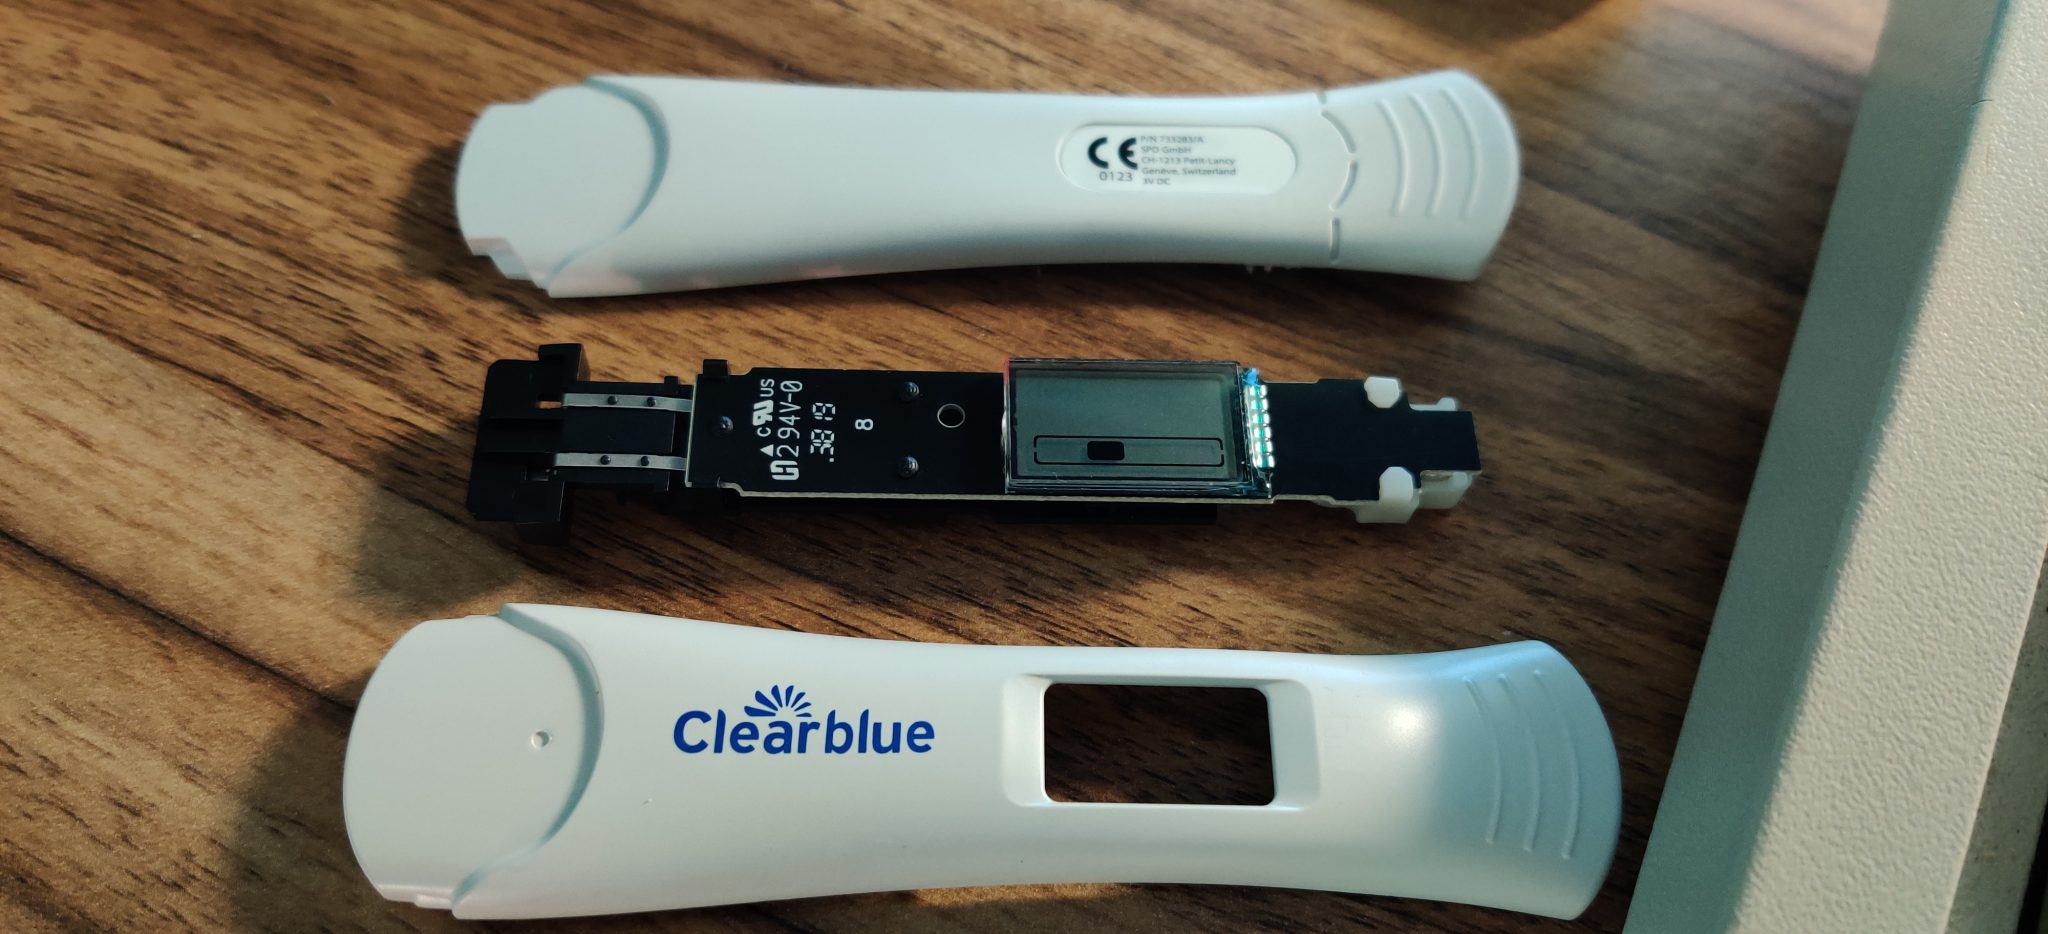 Когда покажет электронный тест. Разобранный тест Clearblue цифровой положительный. Электронный тест на беременность. Электронный тестер на беременность. Положительный тест на беременность электронный.